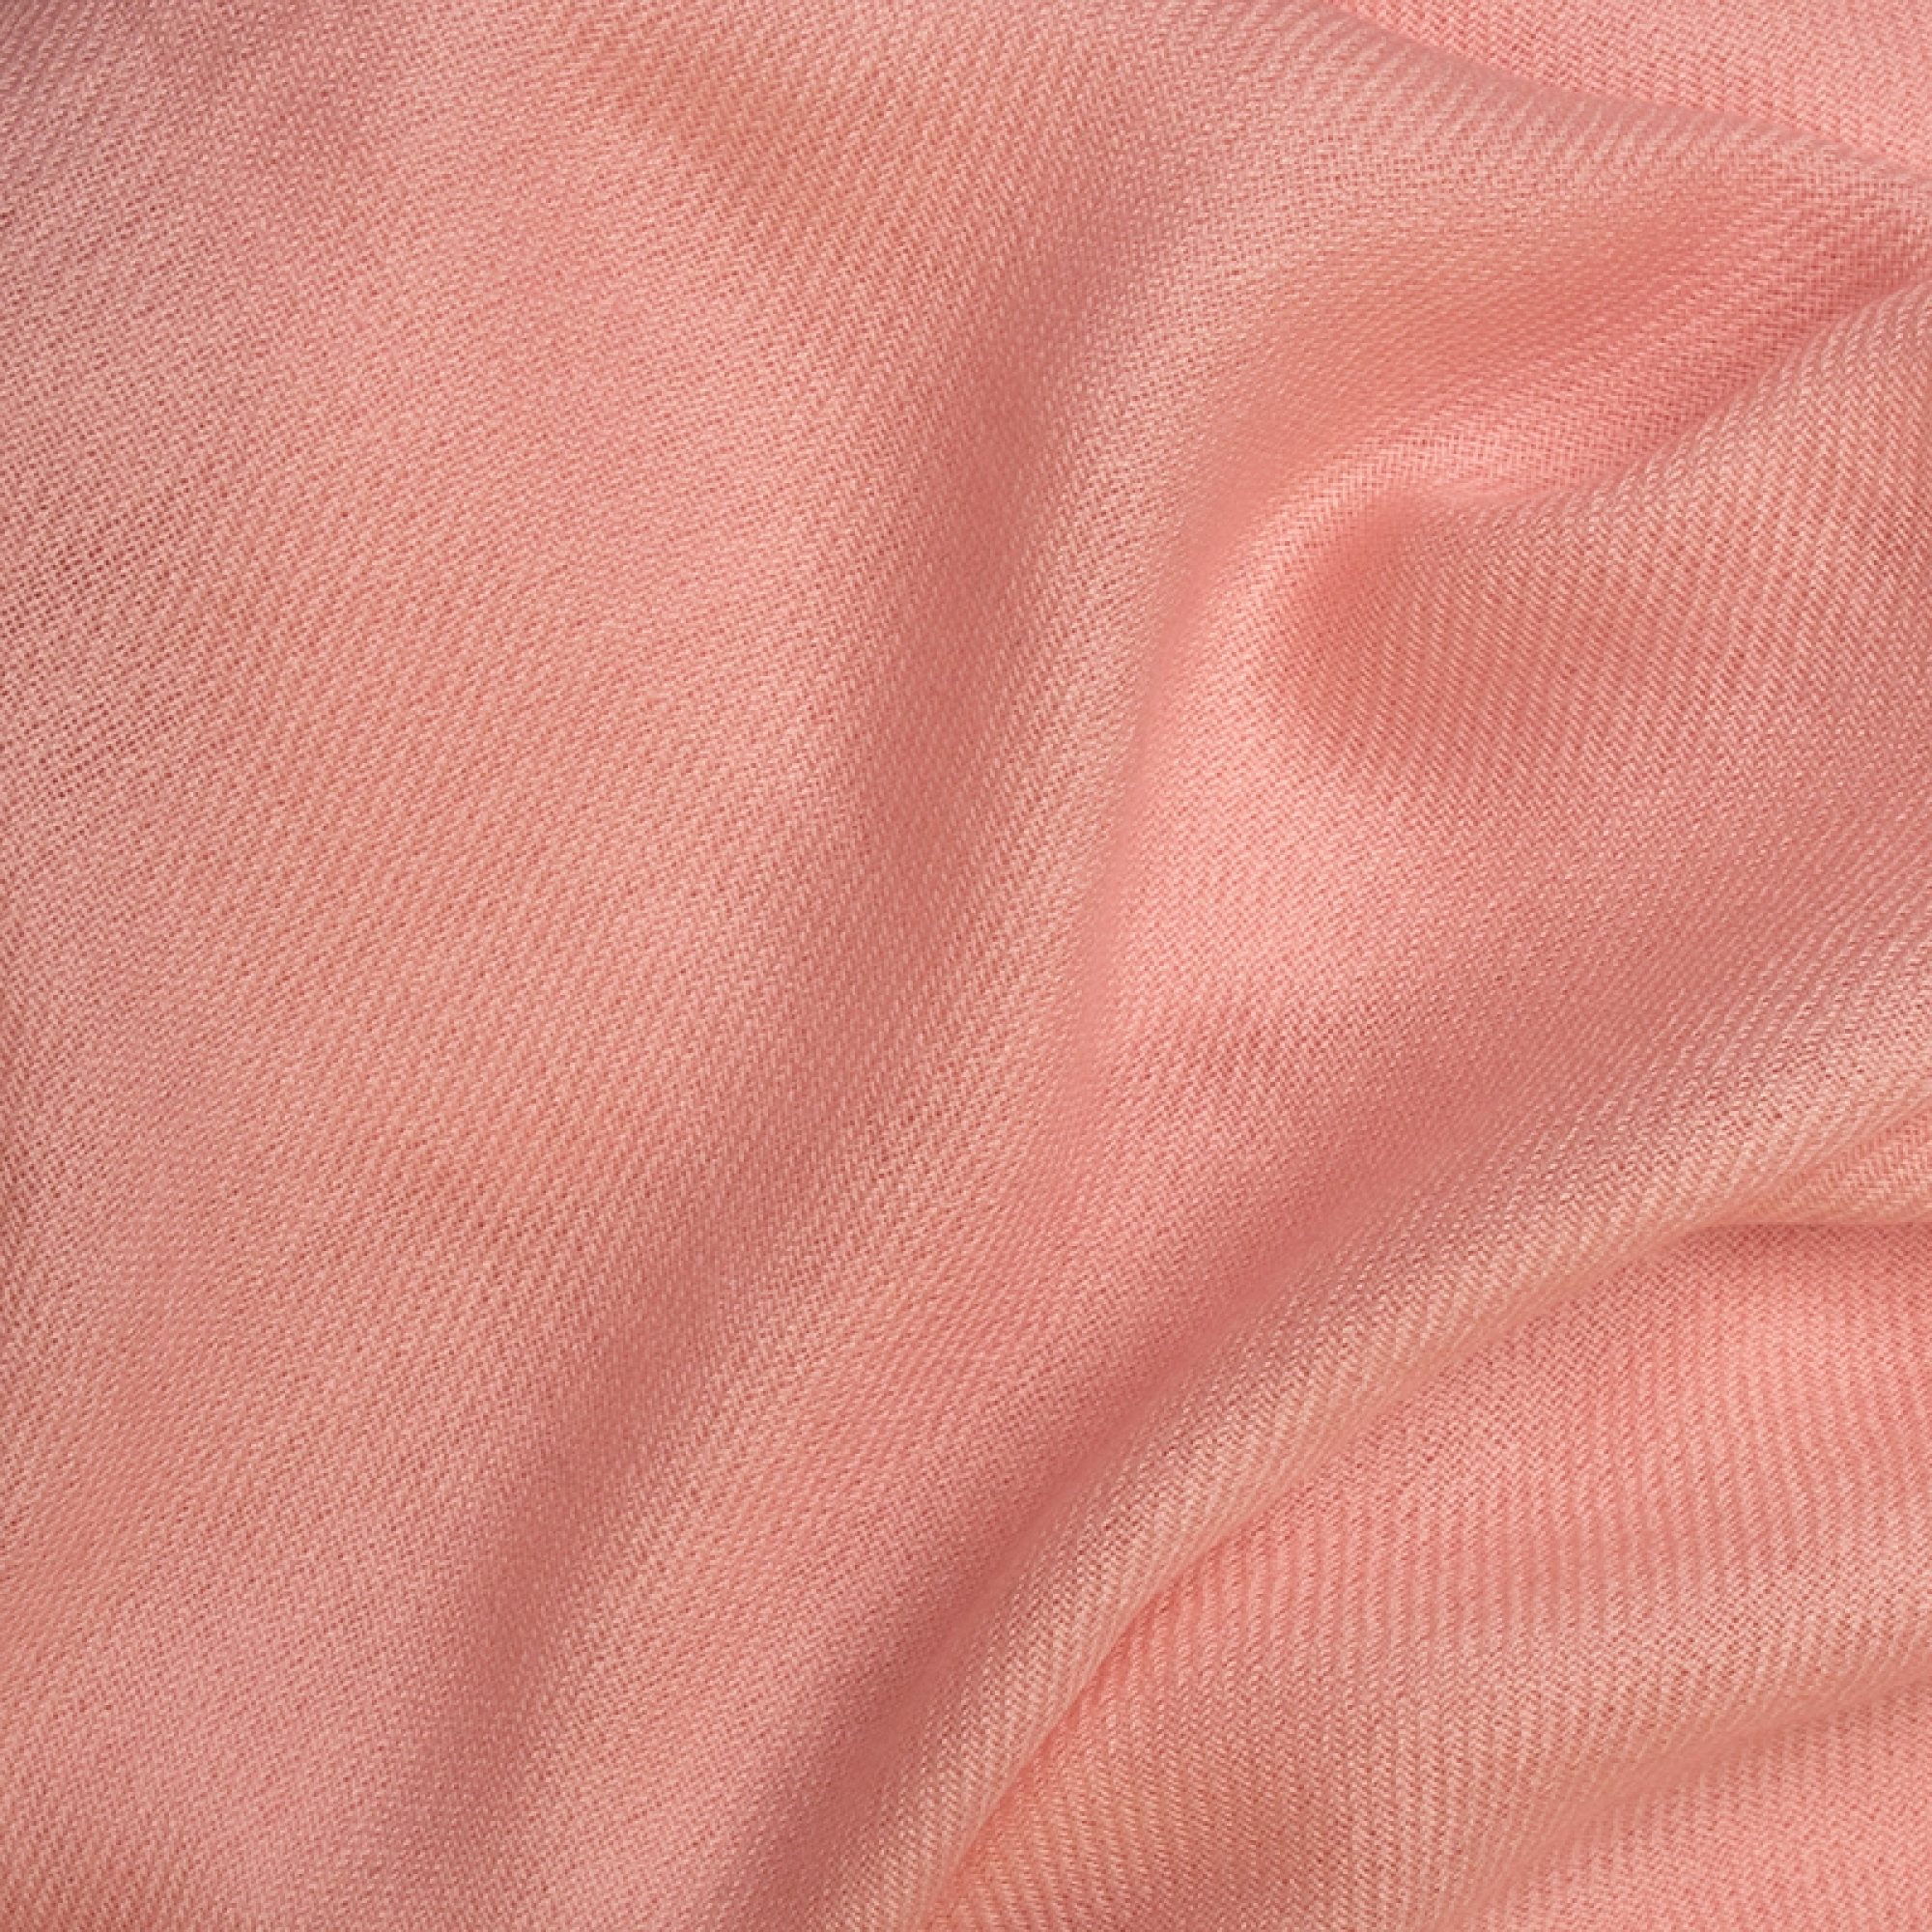 Cachemire accessoires couvertures plaids toodoo plain s 140 x 200 rose creme 140 x 200 cm